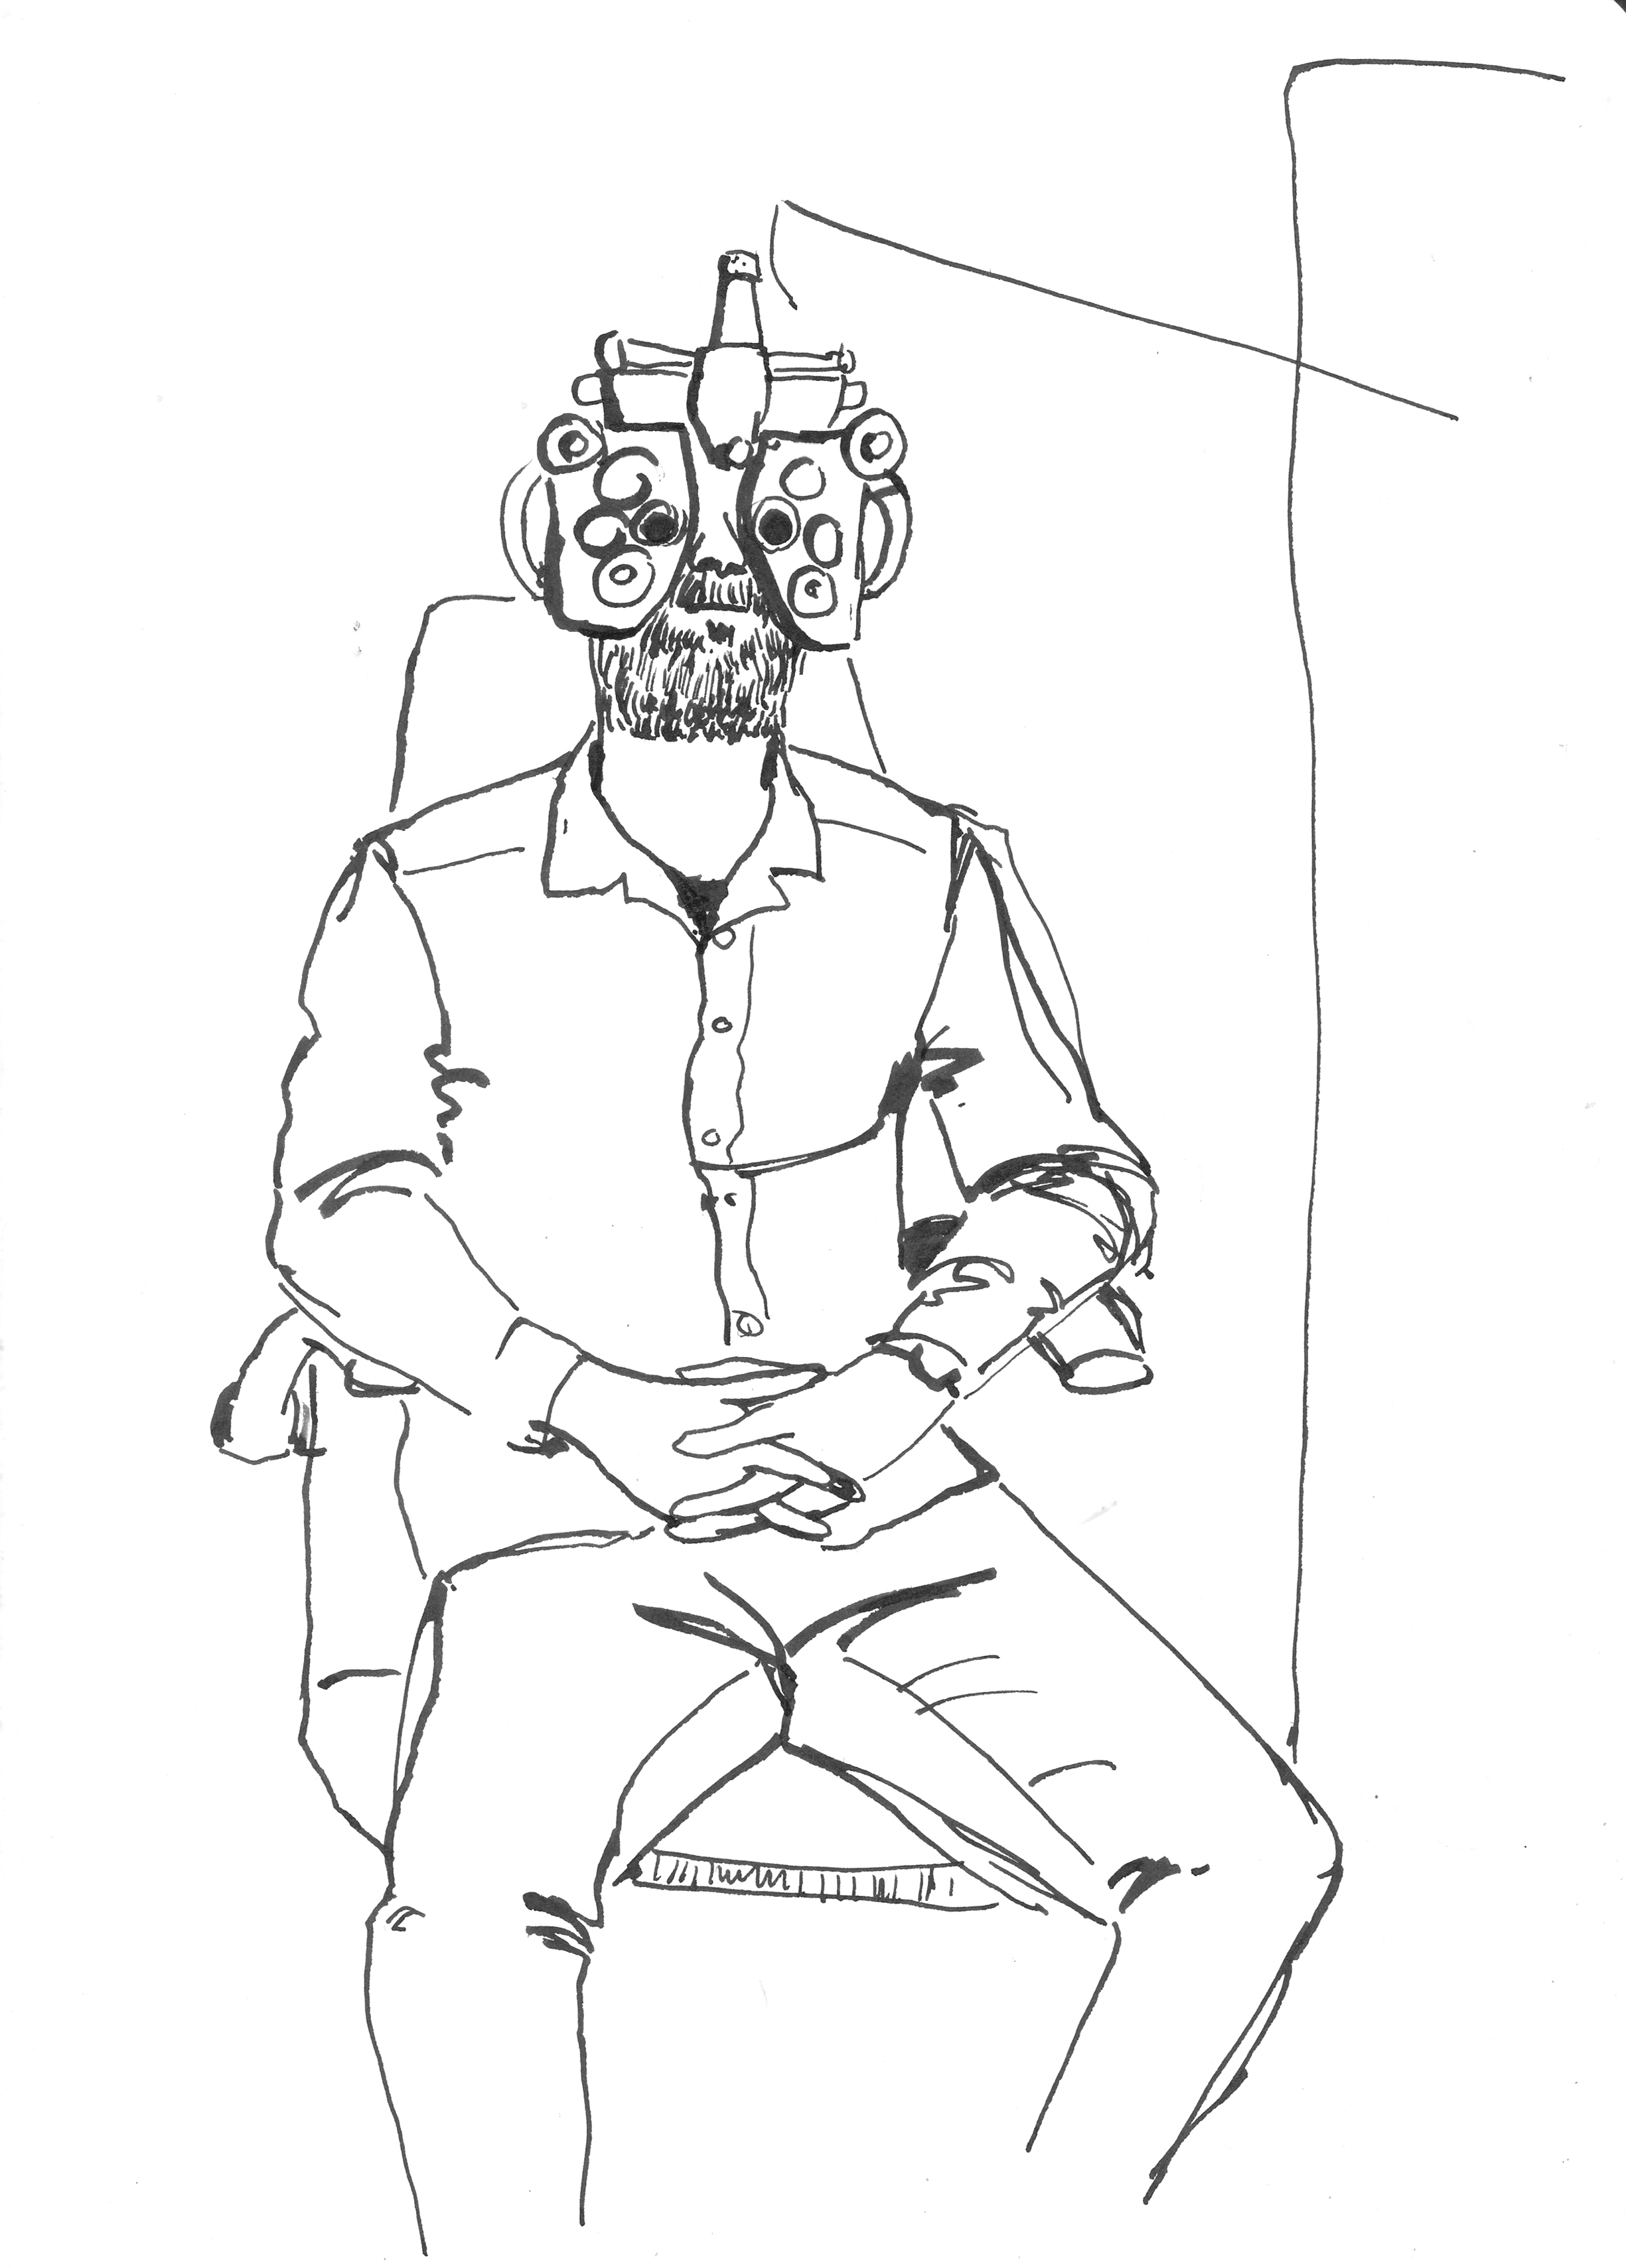 Illustration of man getting eyes measured by Ellen Vesters picture book illustrator